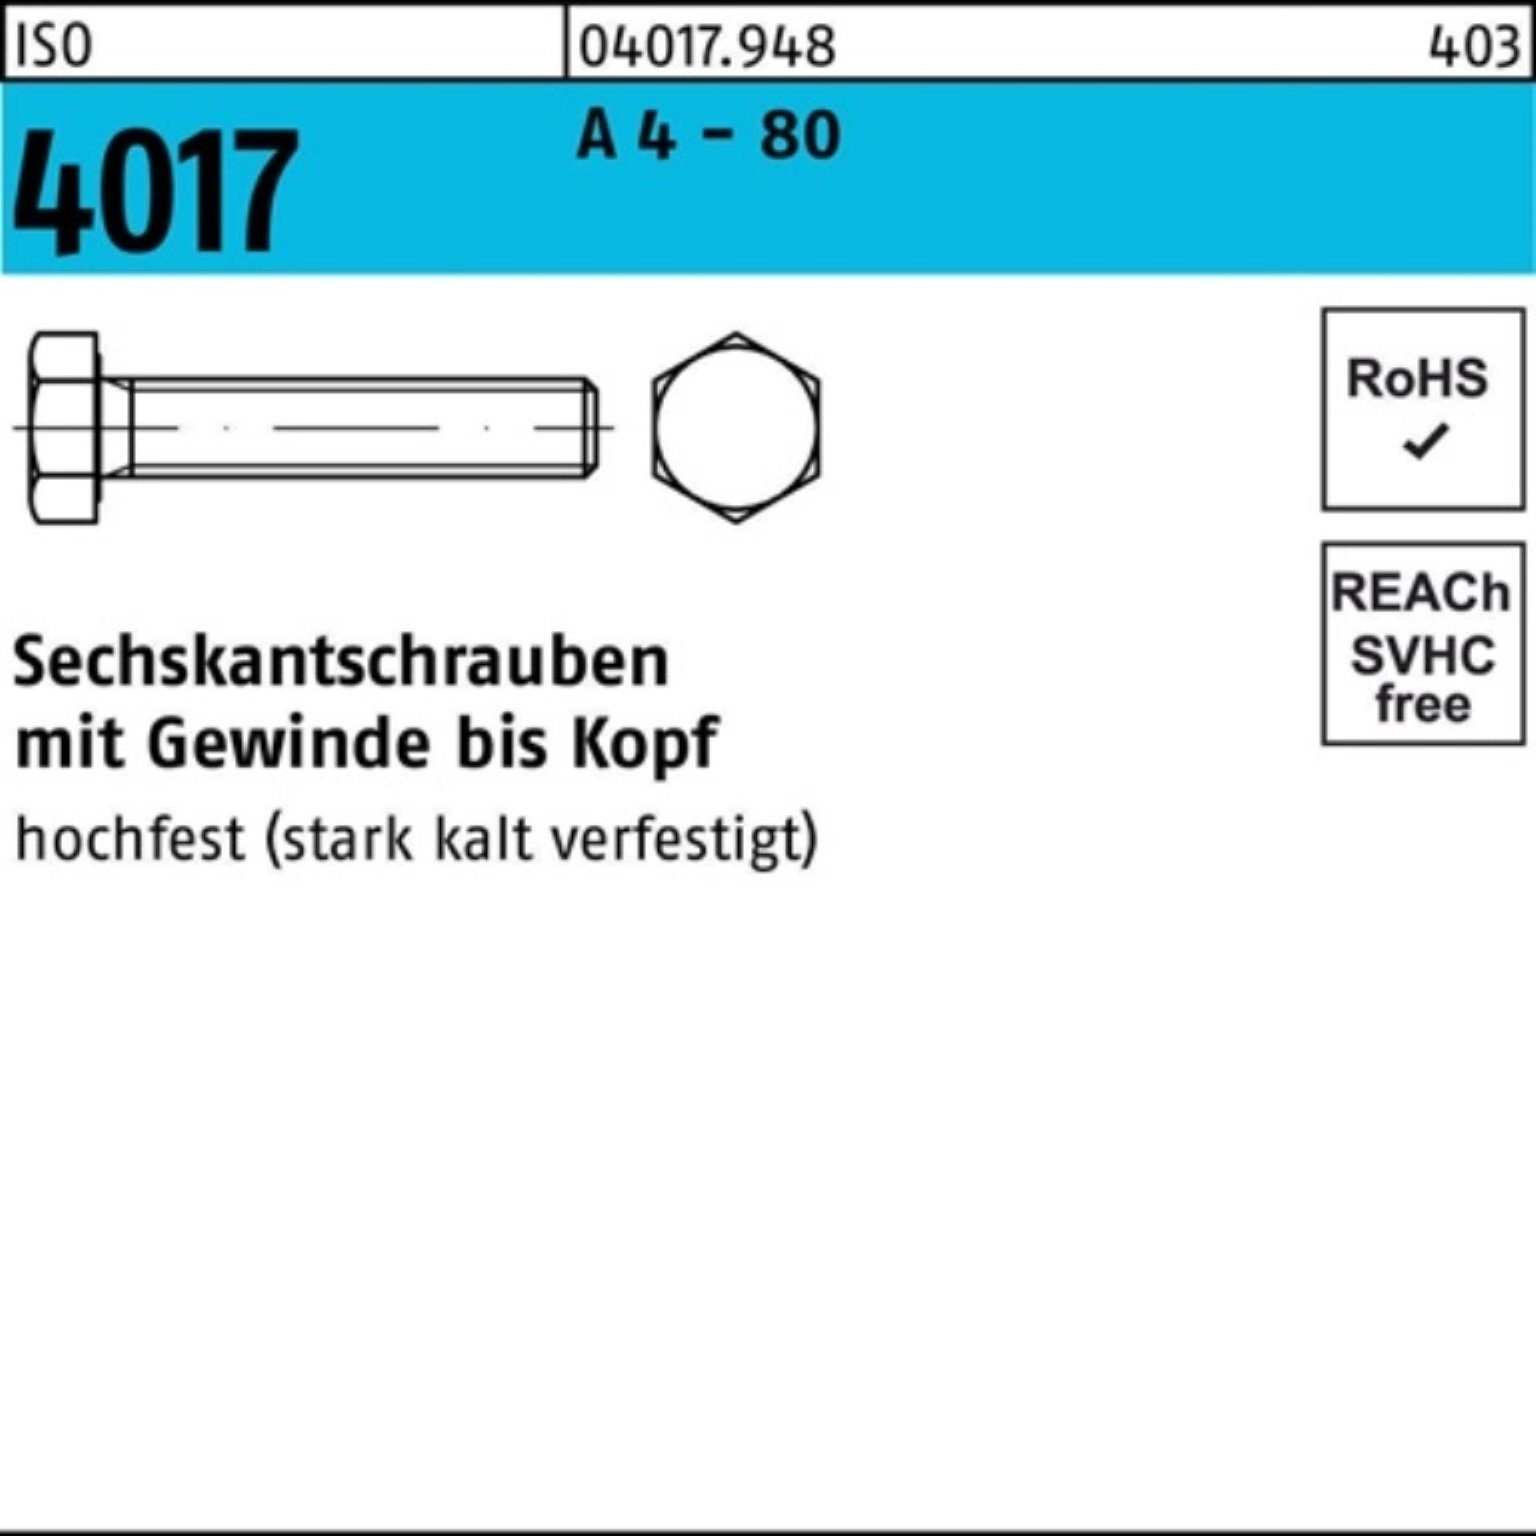 80 50 Pack 4017 4 ISO 60 IS - Sechskantschraube VG Bufab Stück A M12x Sechskantschraube 100er